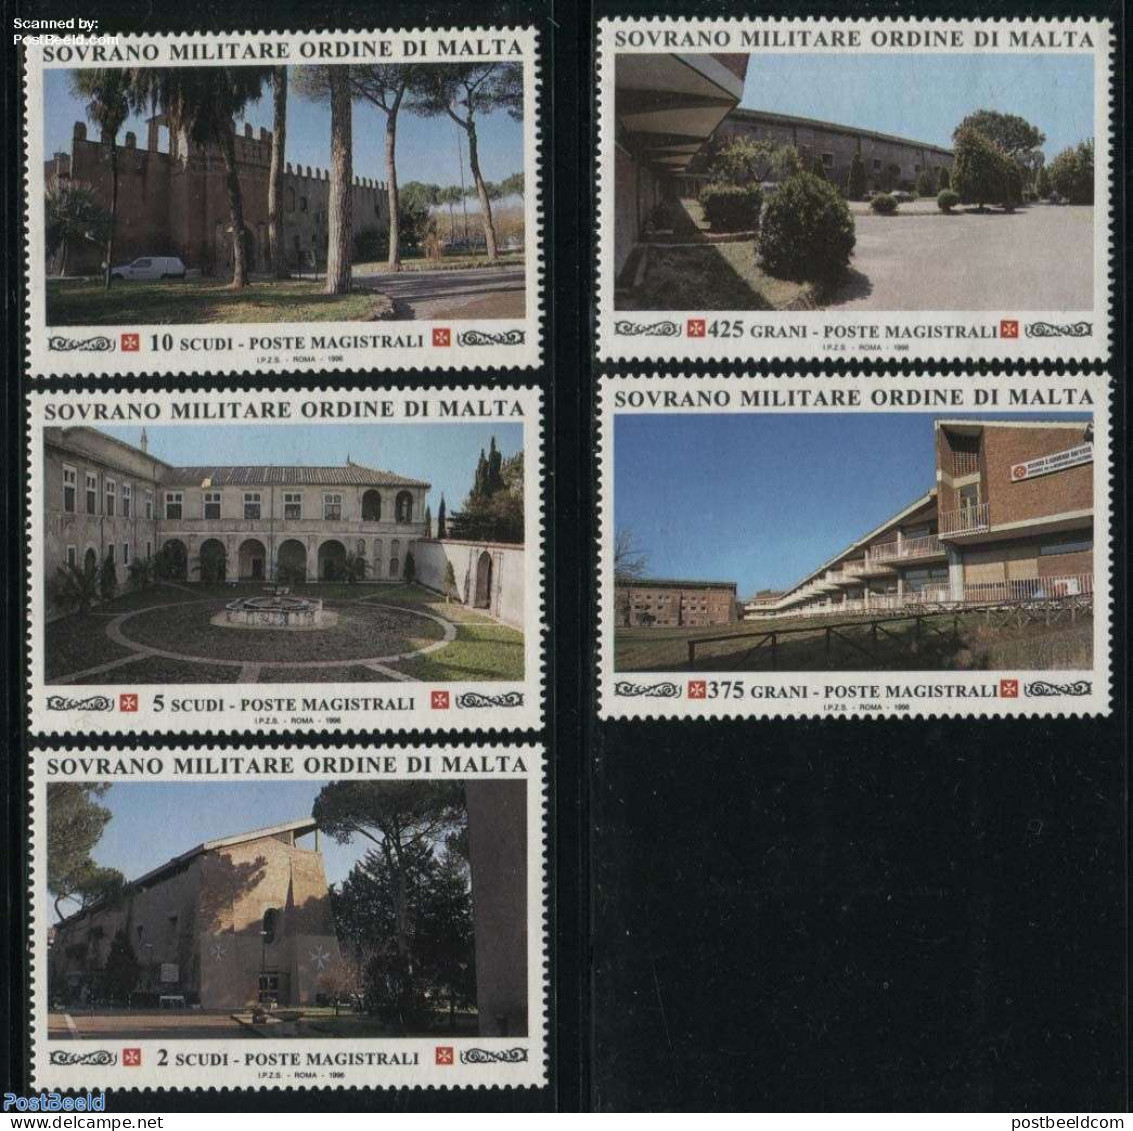 Sovereign Order Of Malta 1996 Giovanni Battista Institute 5v, Mint NH, Art - Castles & Fortifications - Schlösser U. Burgen